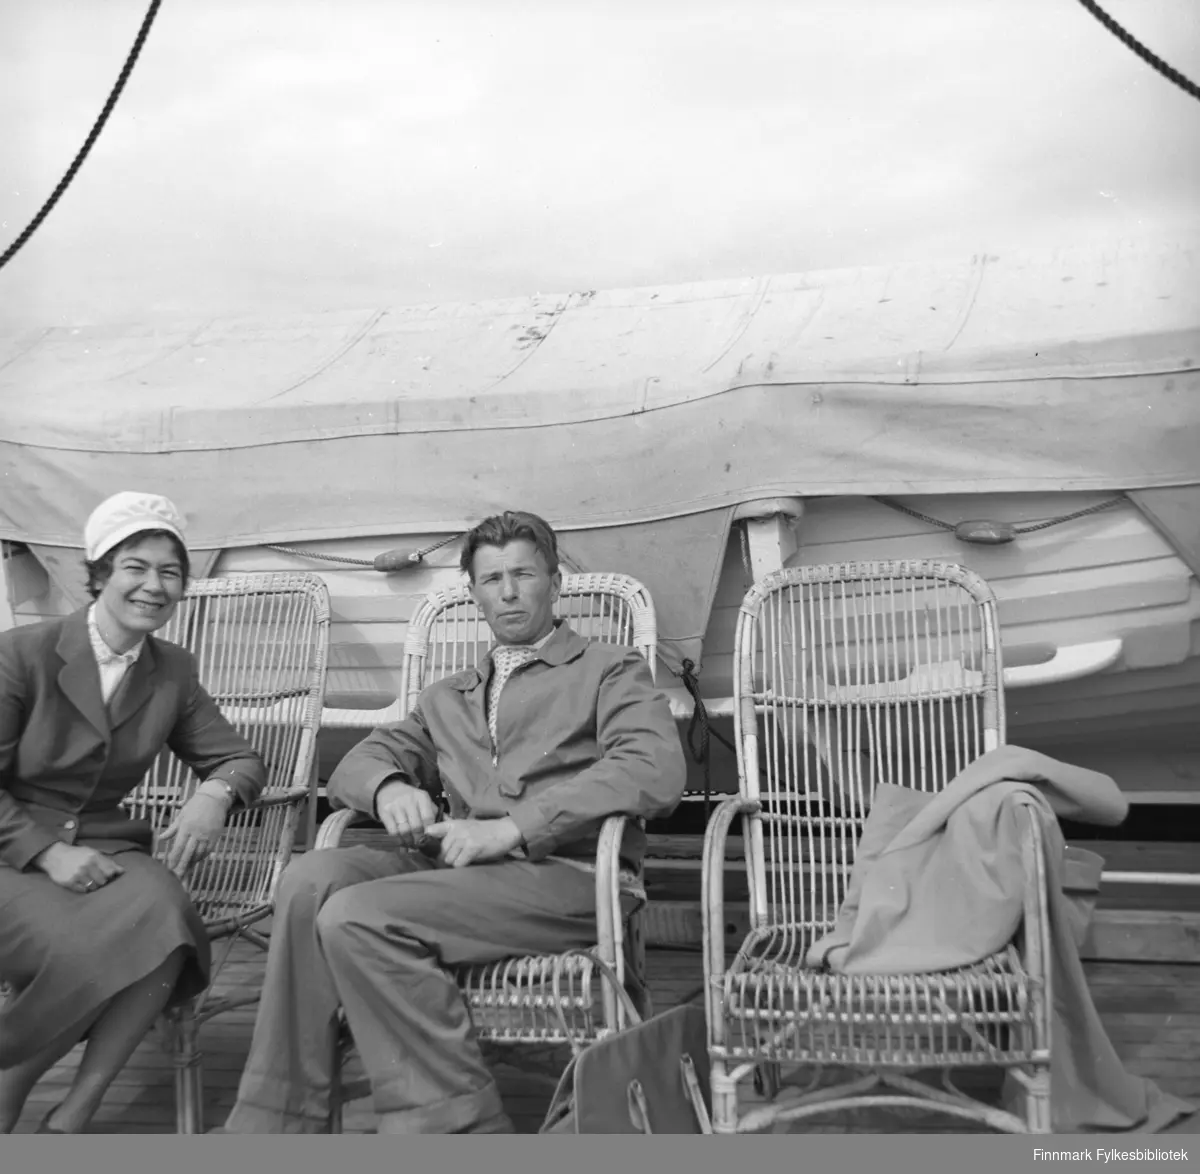 Jenny og Eino fotografert sittende i dekkstoler rett foran en livbåt.